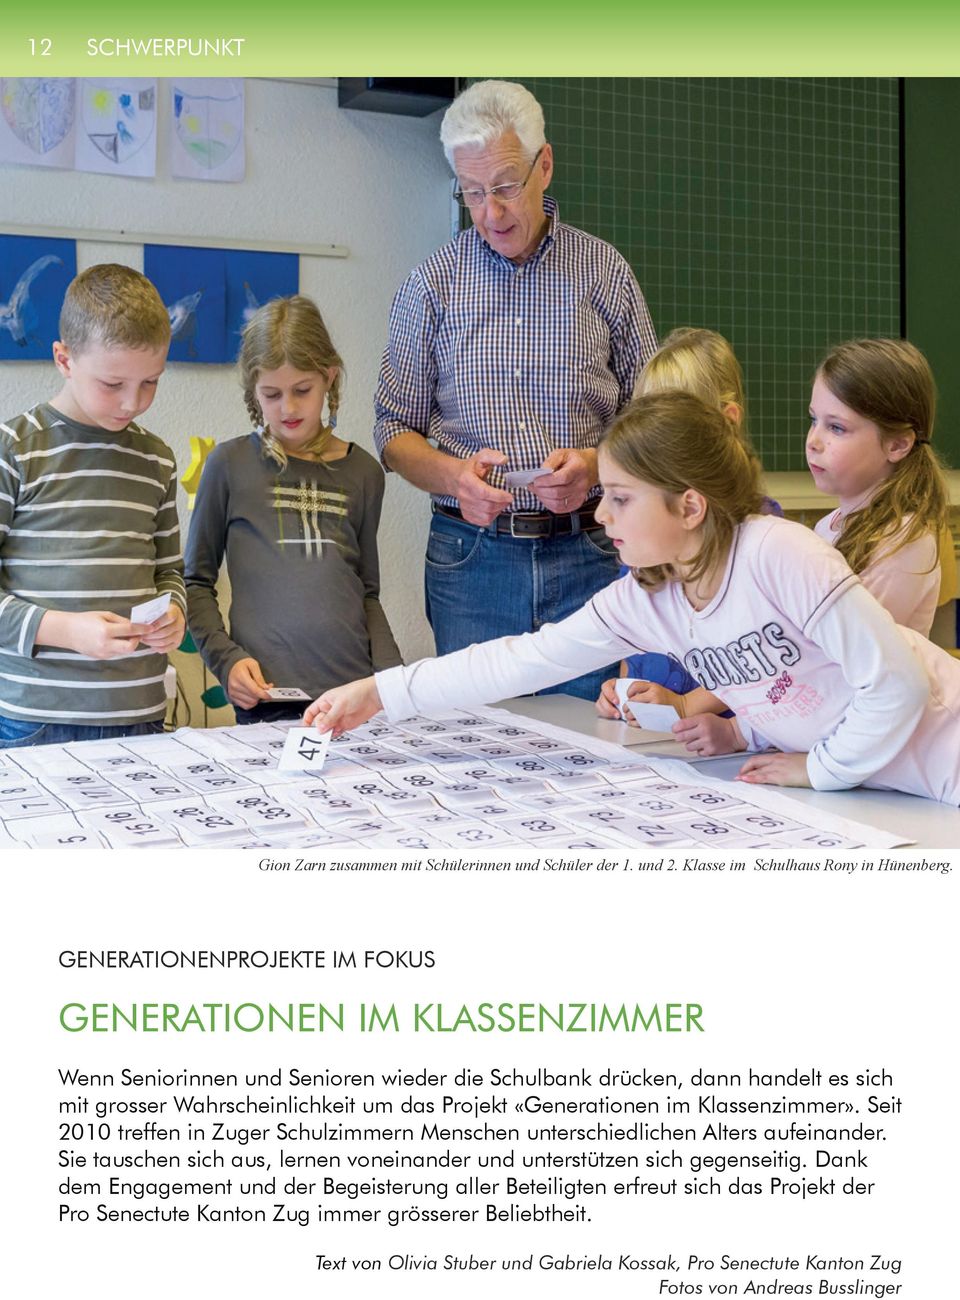 Projekt «Generationen im Klassenzimmer». Seit 2010 treffen in Zuger Schulzimmern Menschen unterschiedlichen Alters aufeinander.